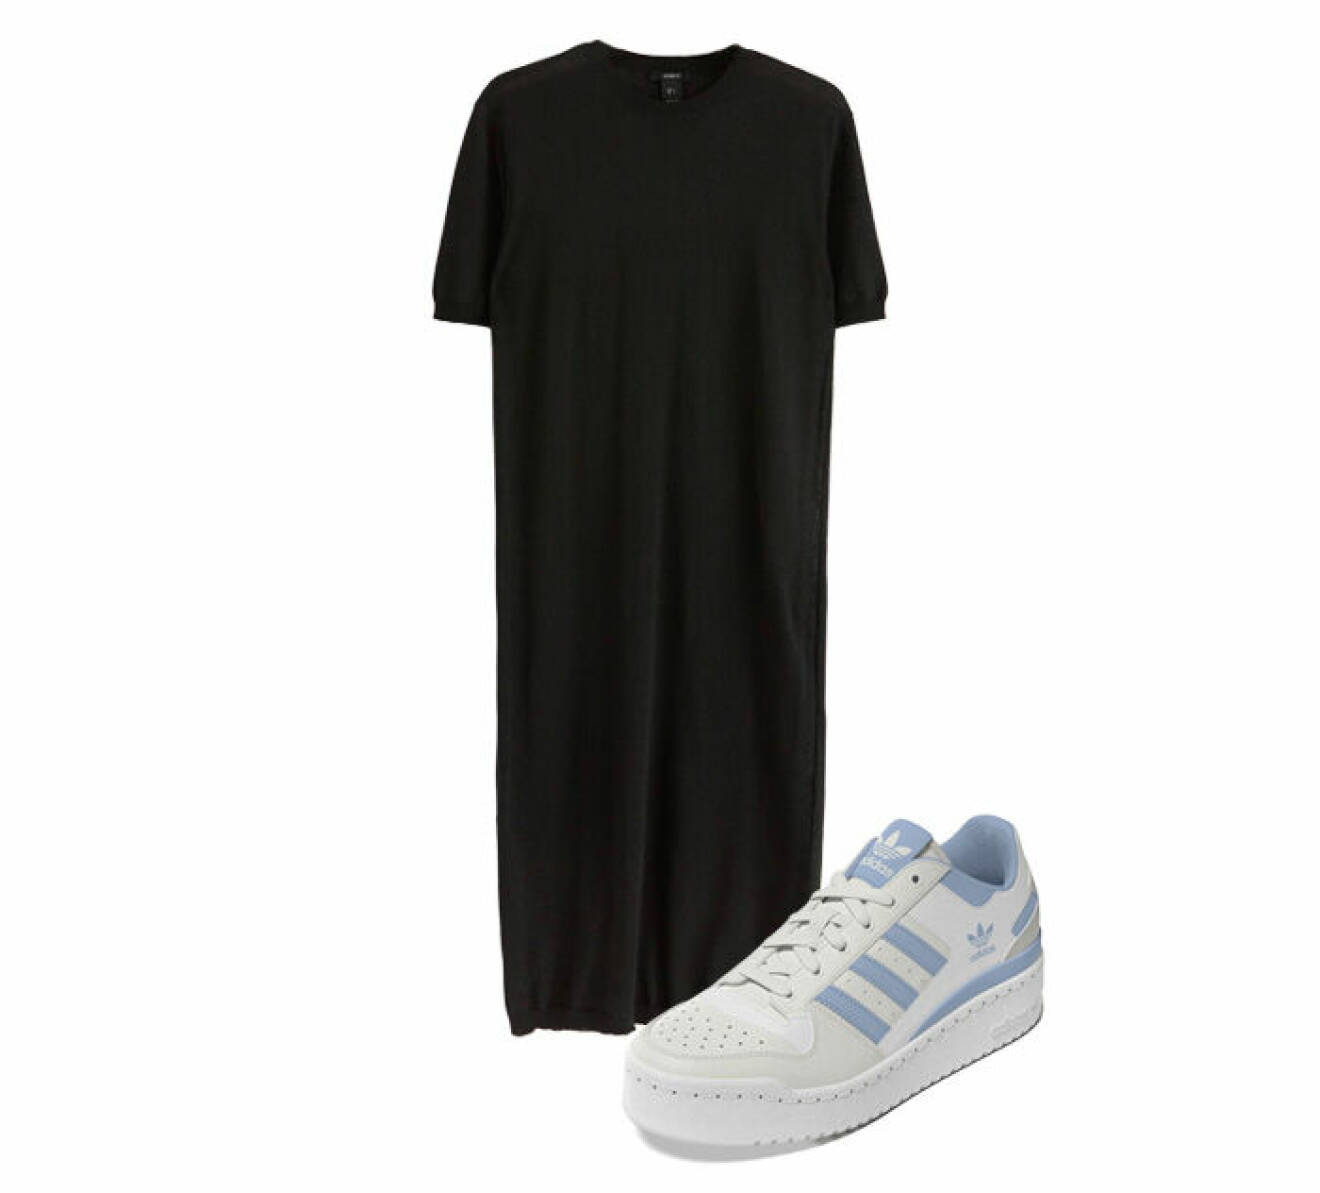 svart klänning med skor i modellen forum bold från adidas